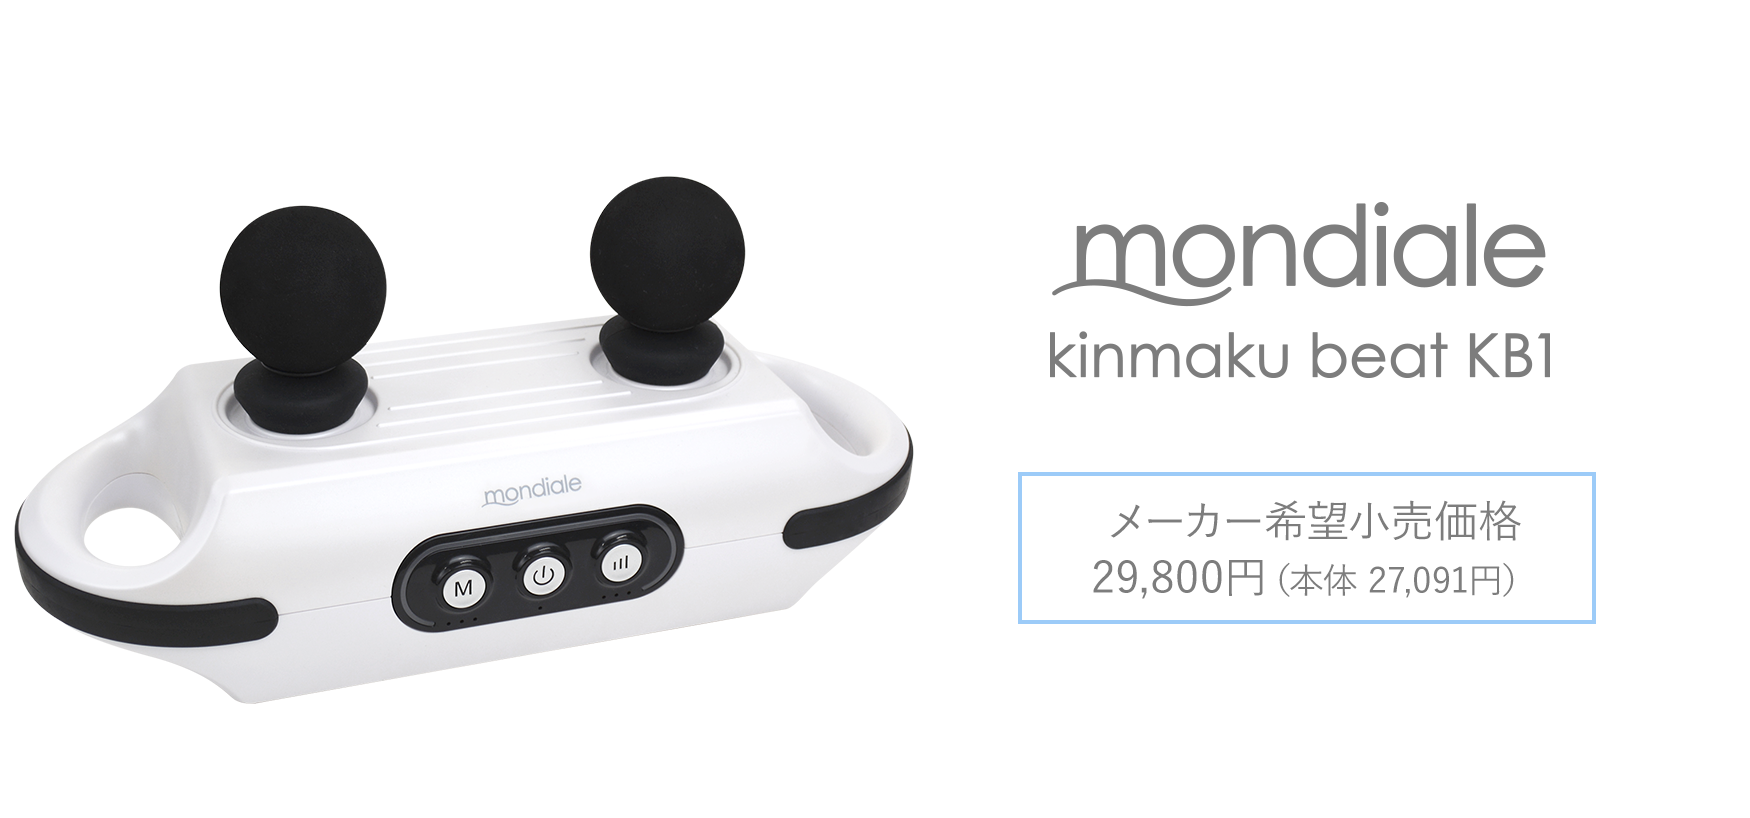 mondiale kinmaku beat KB1 メーカー希望小売価格 29,800円（本体 27,091円）